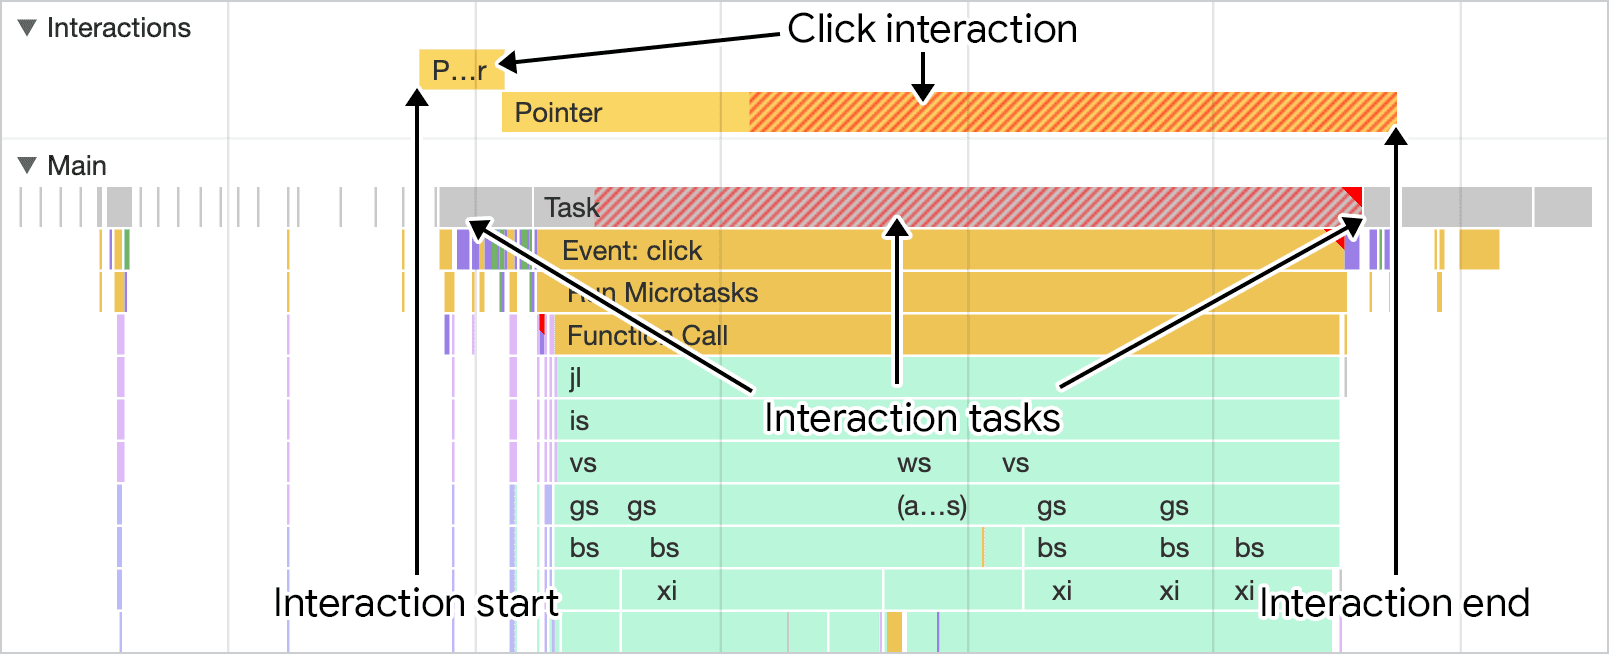 لقطة شاشة لتفاعل كما هو موضّح في لوحة الأداء في &quot;أدوات مطوري البرامج في Chrome&quot;. يعرِض مسار التفاعلات أعلى مسار سلسلة المحادثات الرئيسي مدة التفاعل، والتي يمكن ترتيبها مع نشاط سلسلة المحادثات الرئيسية.